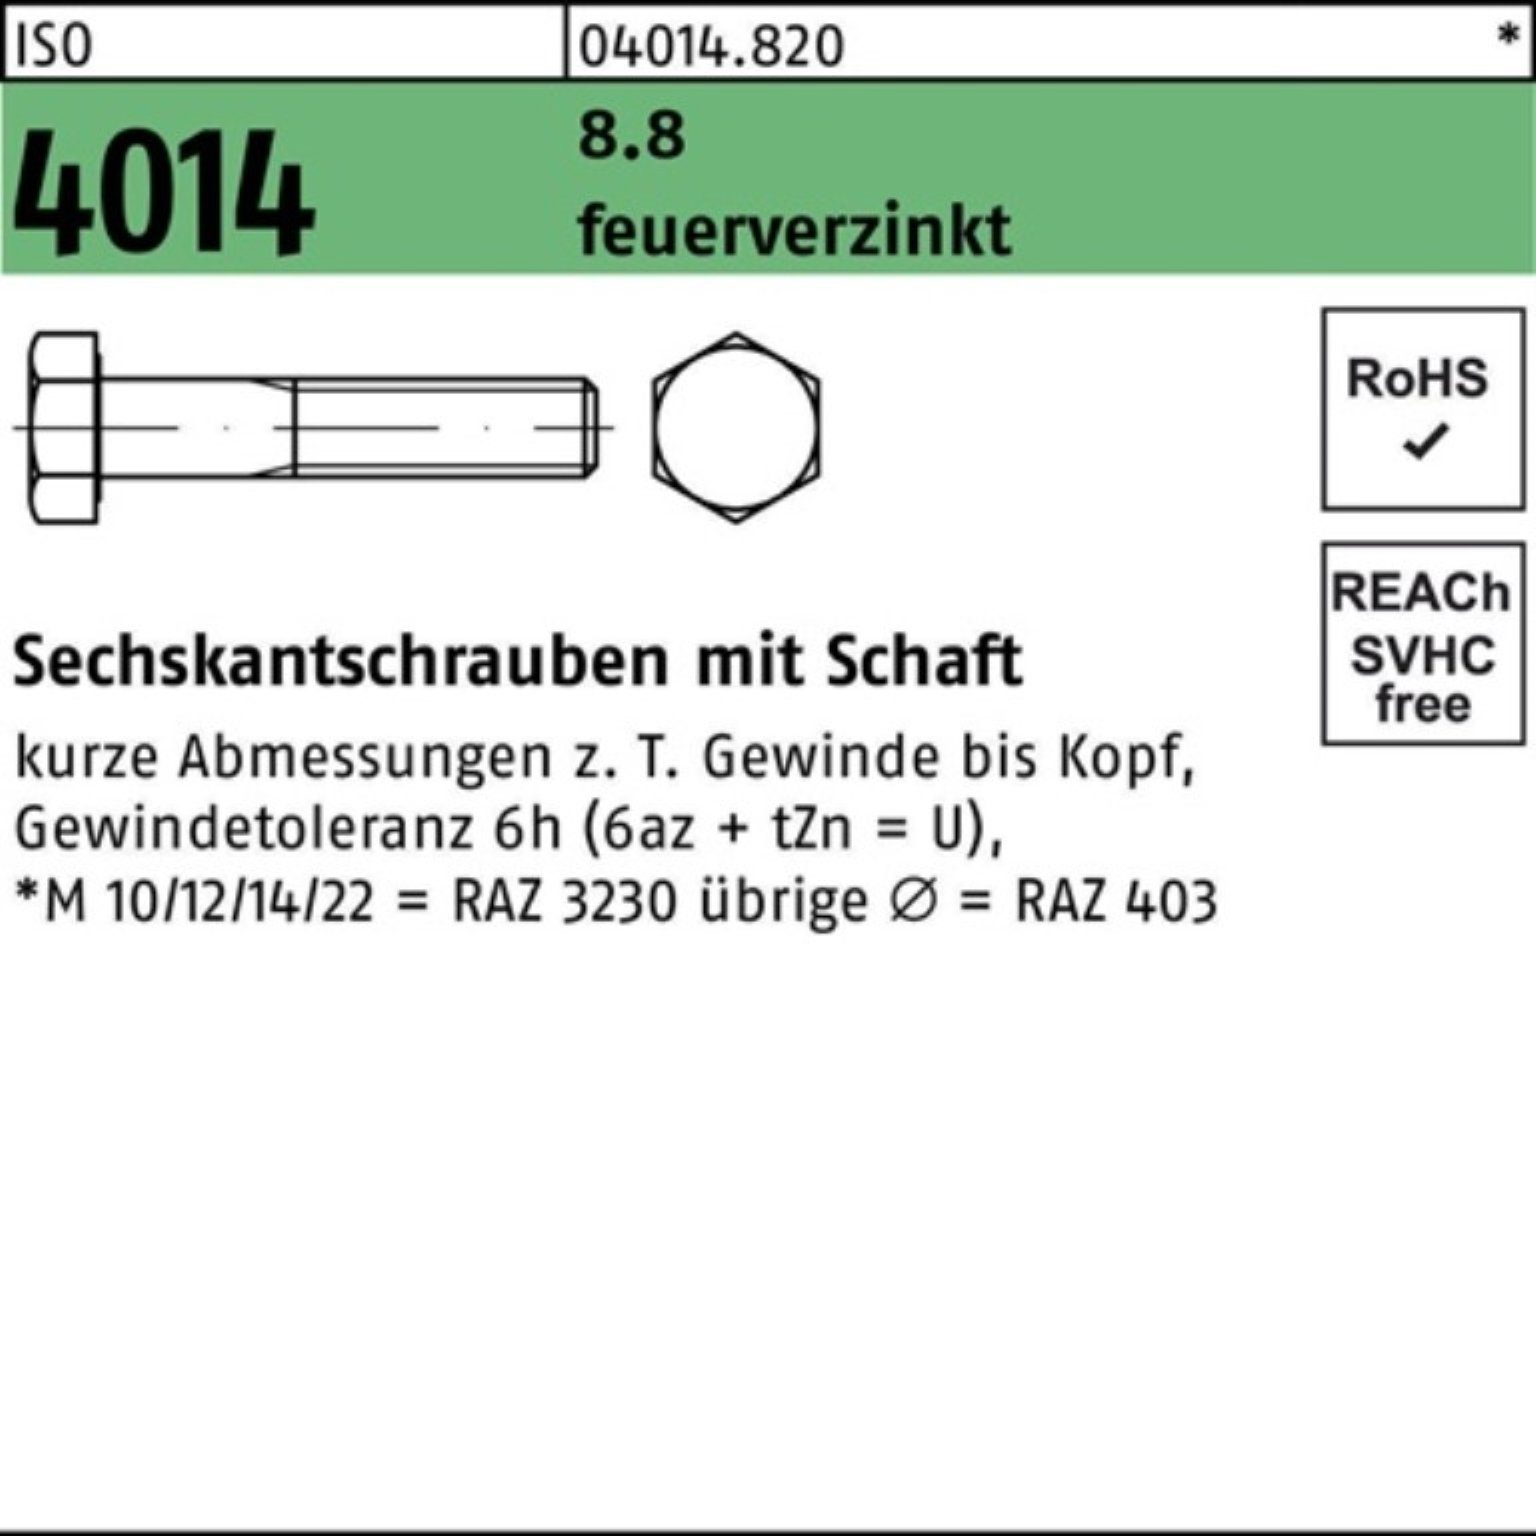 Bufab Sechskantschraube 4014 Pack Schaft M33x Sechskantschraube 180 1 ISO 8.8 feuerverz. 100er